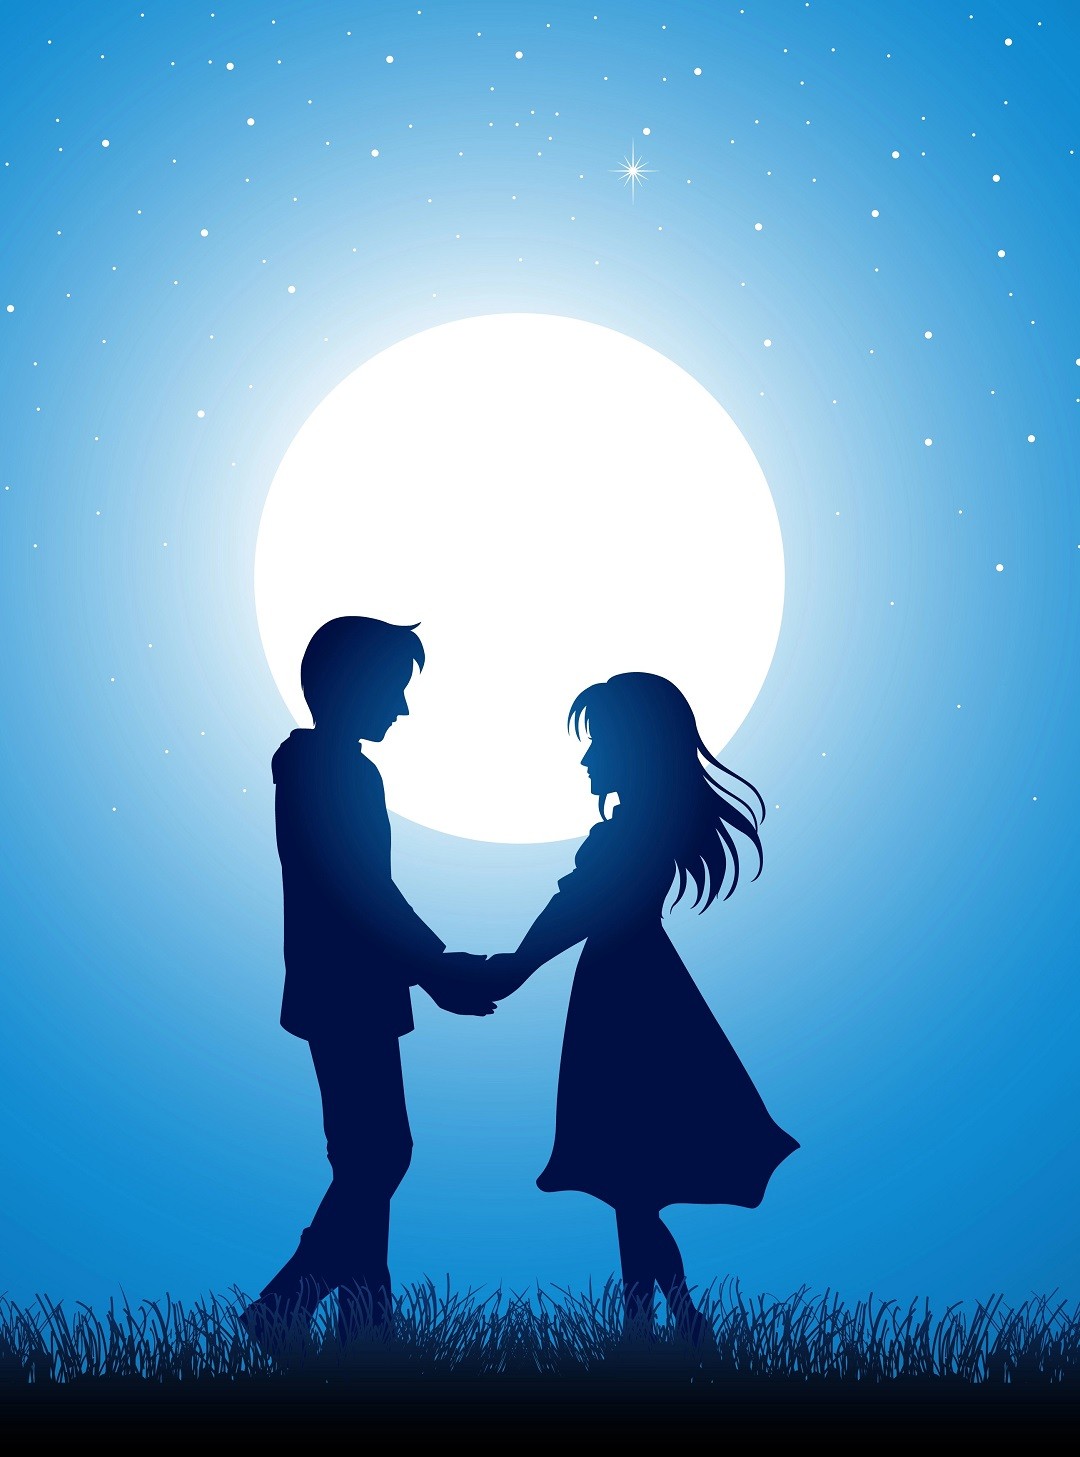 cặp đôi khiêu vũ dưới ánh trăng và bầu trời xanh